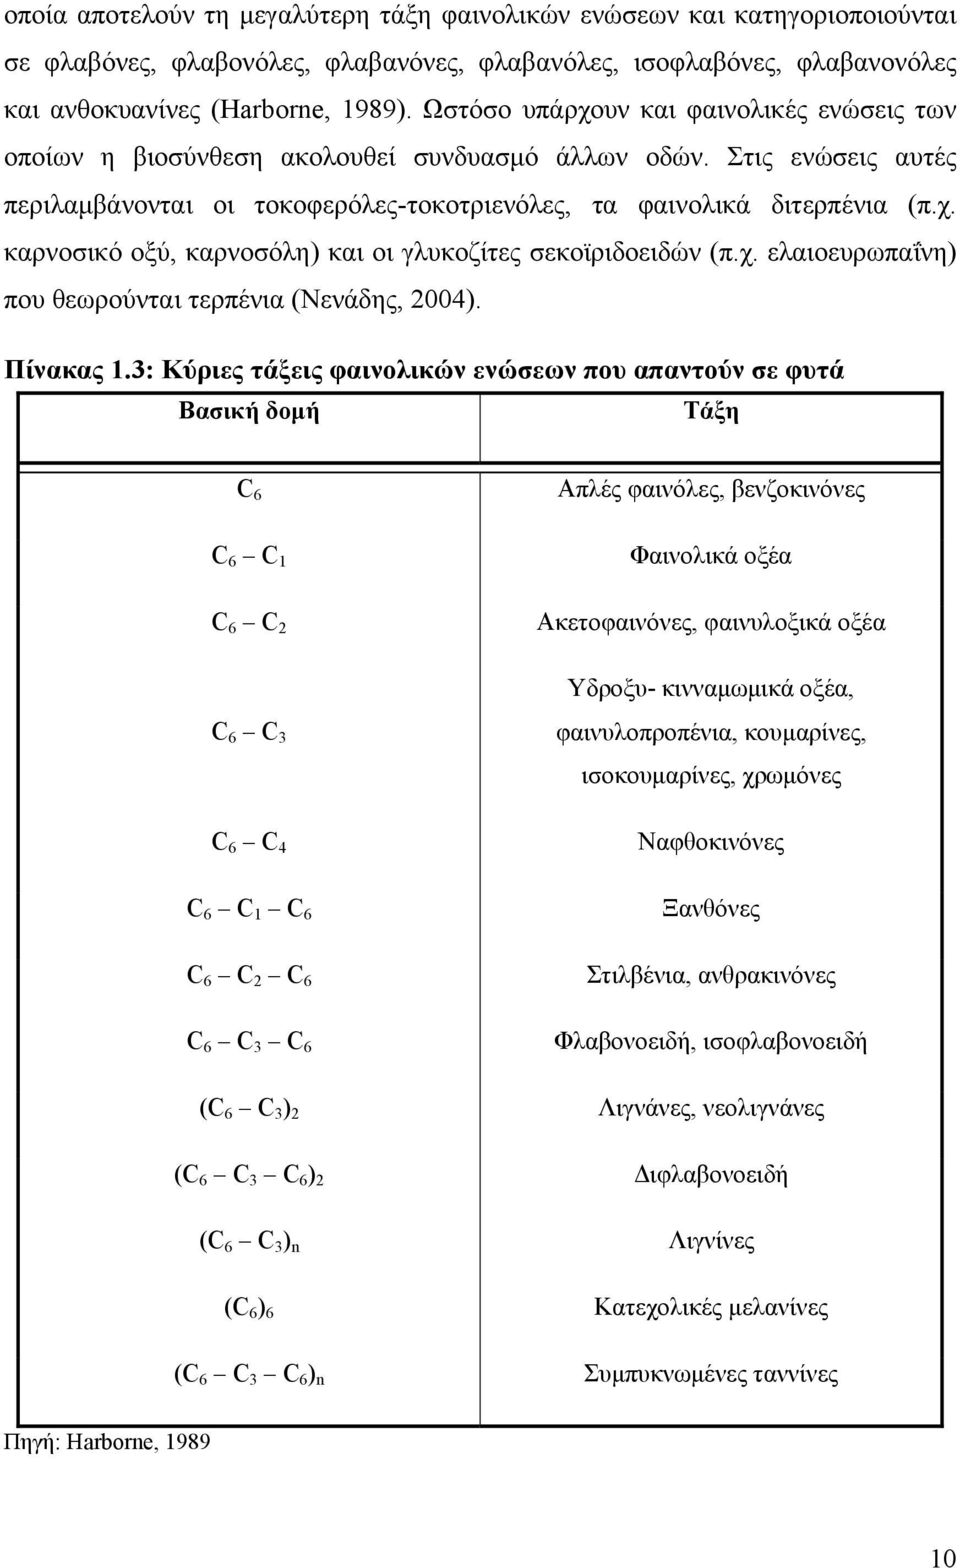 χ. ελαιοευρωπαΐνη) που θεωρούνται τερπένια (Νενάδης, 2004). Πίνακας 1.